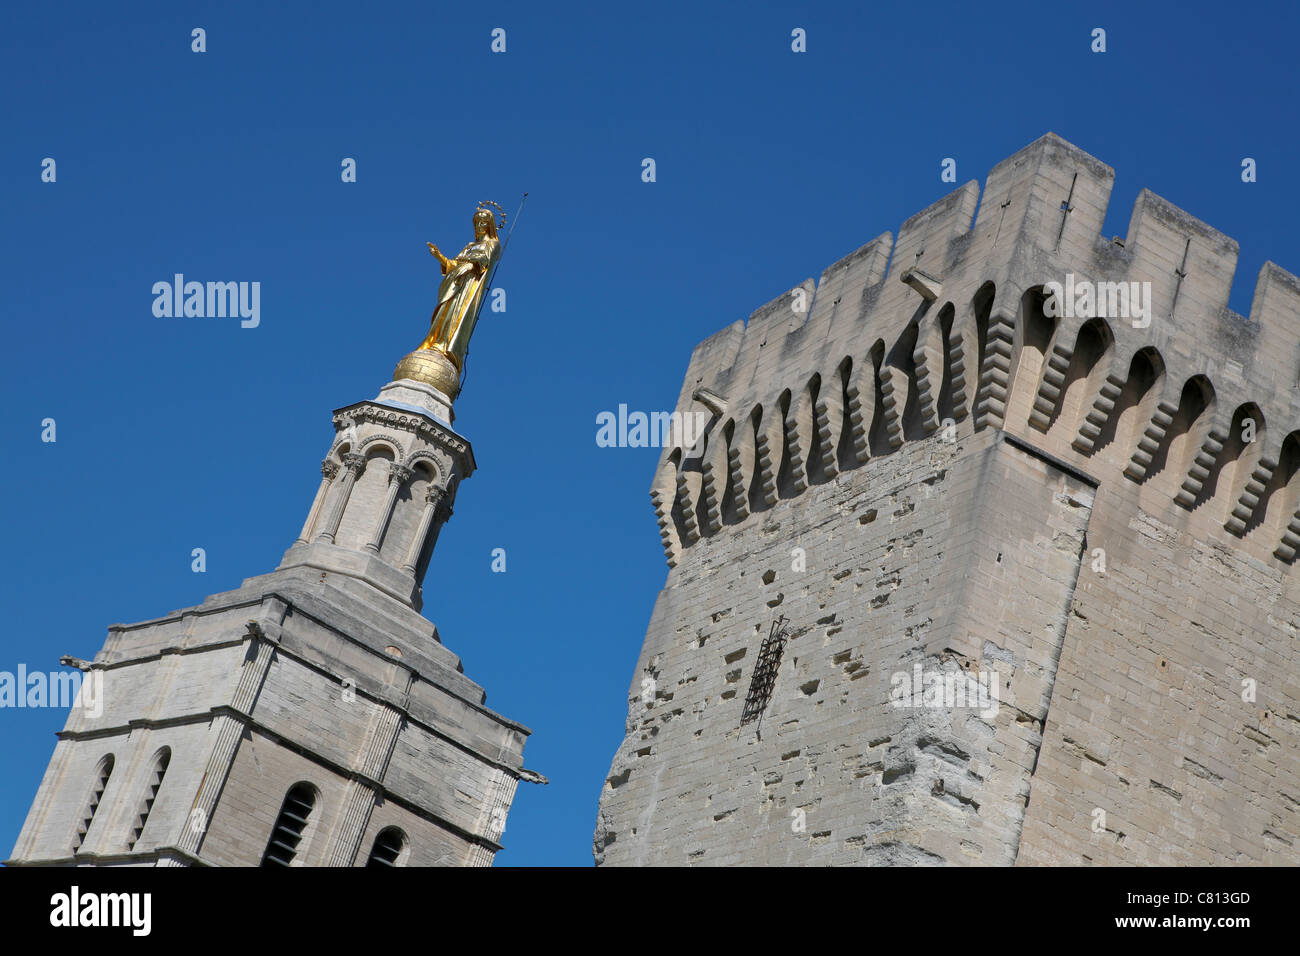 St Mary Gold statue sur l'une des tours au Palais des Papes / Palais des Papes, Avignon, France Banque D'Images